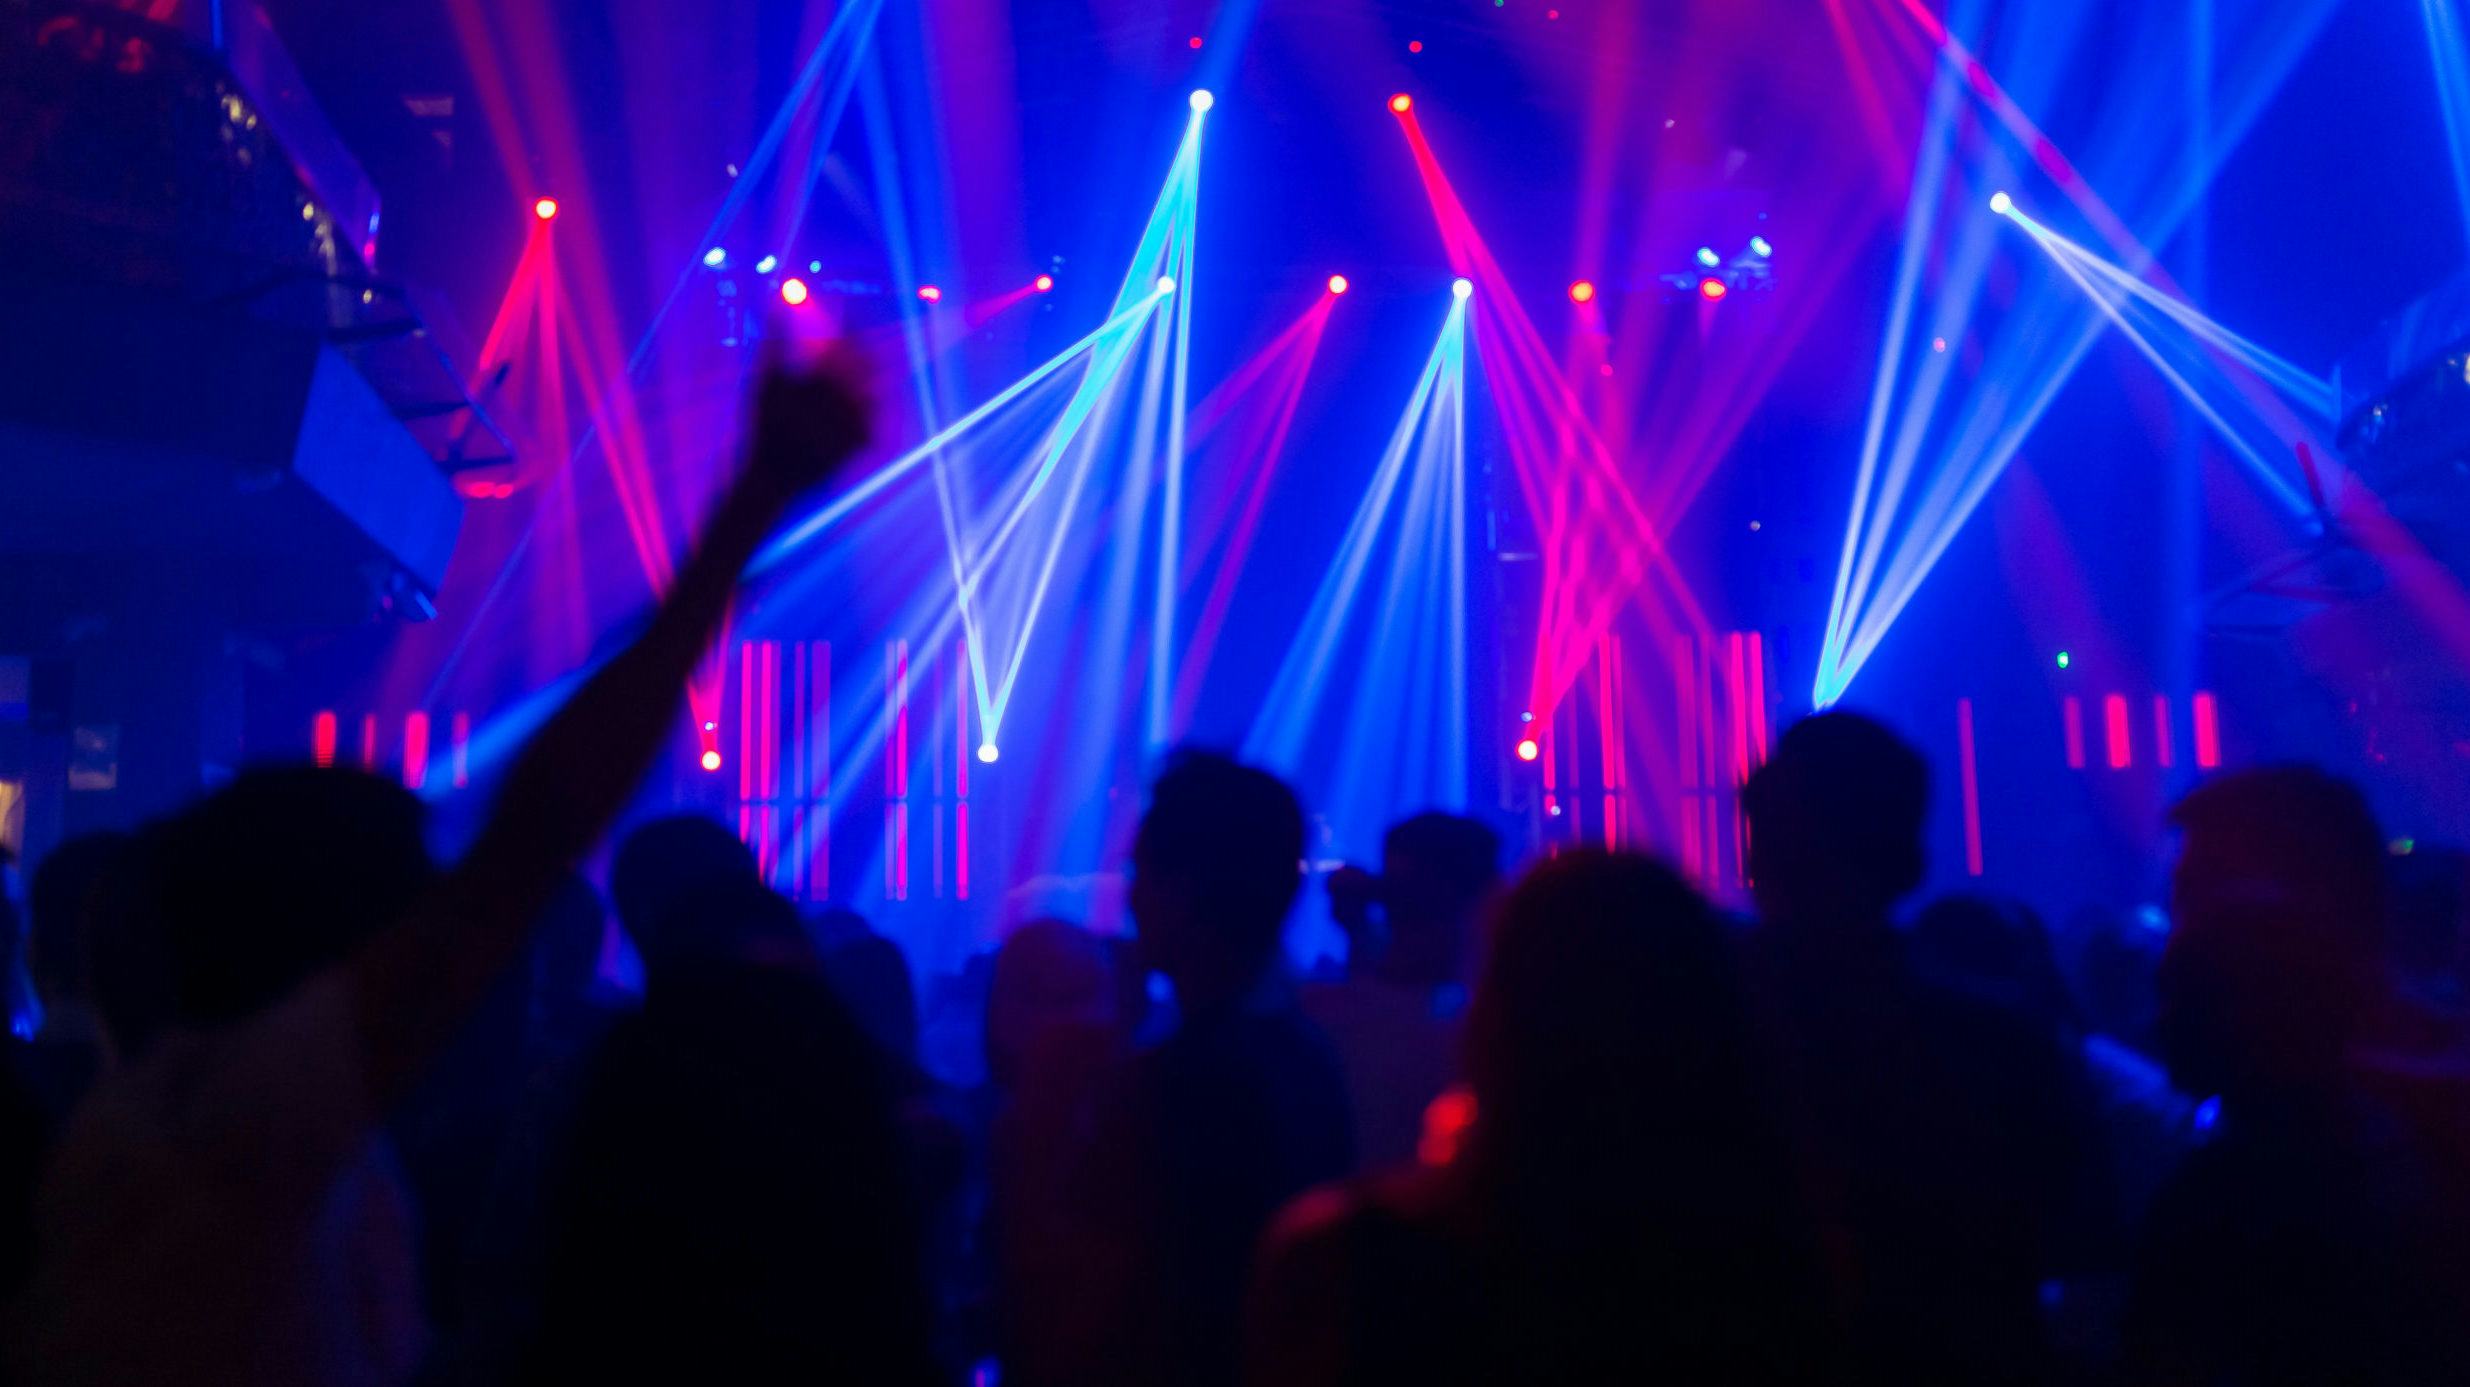 Nachtclubs overleven, maar willen perspectief om vol te houden